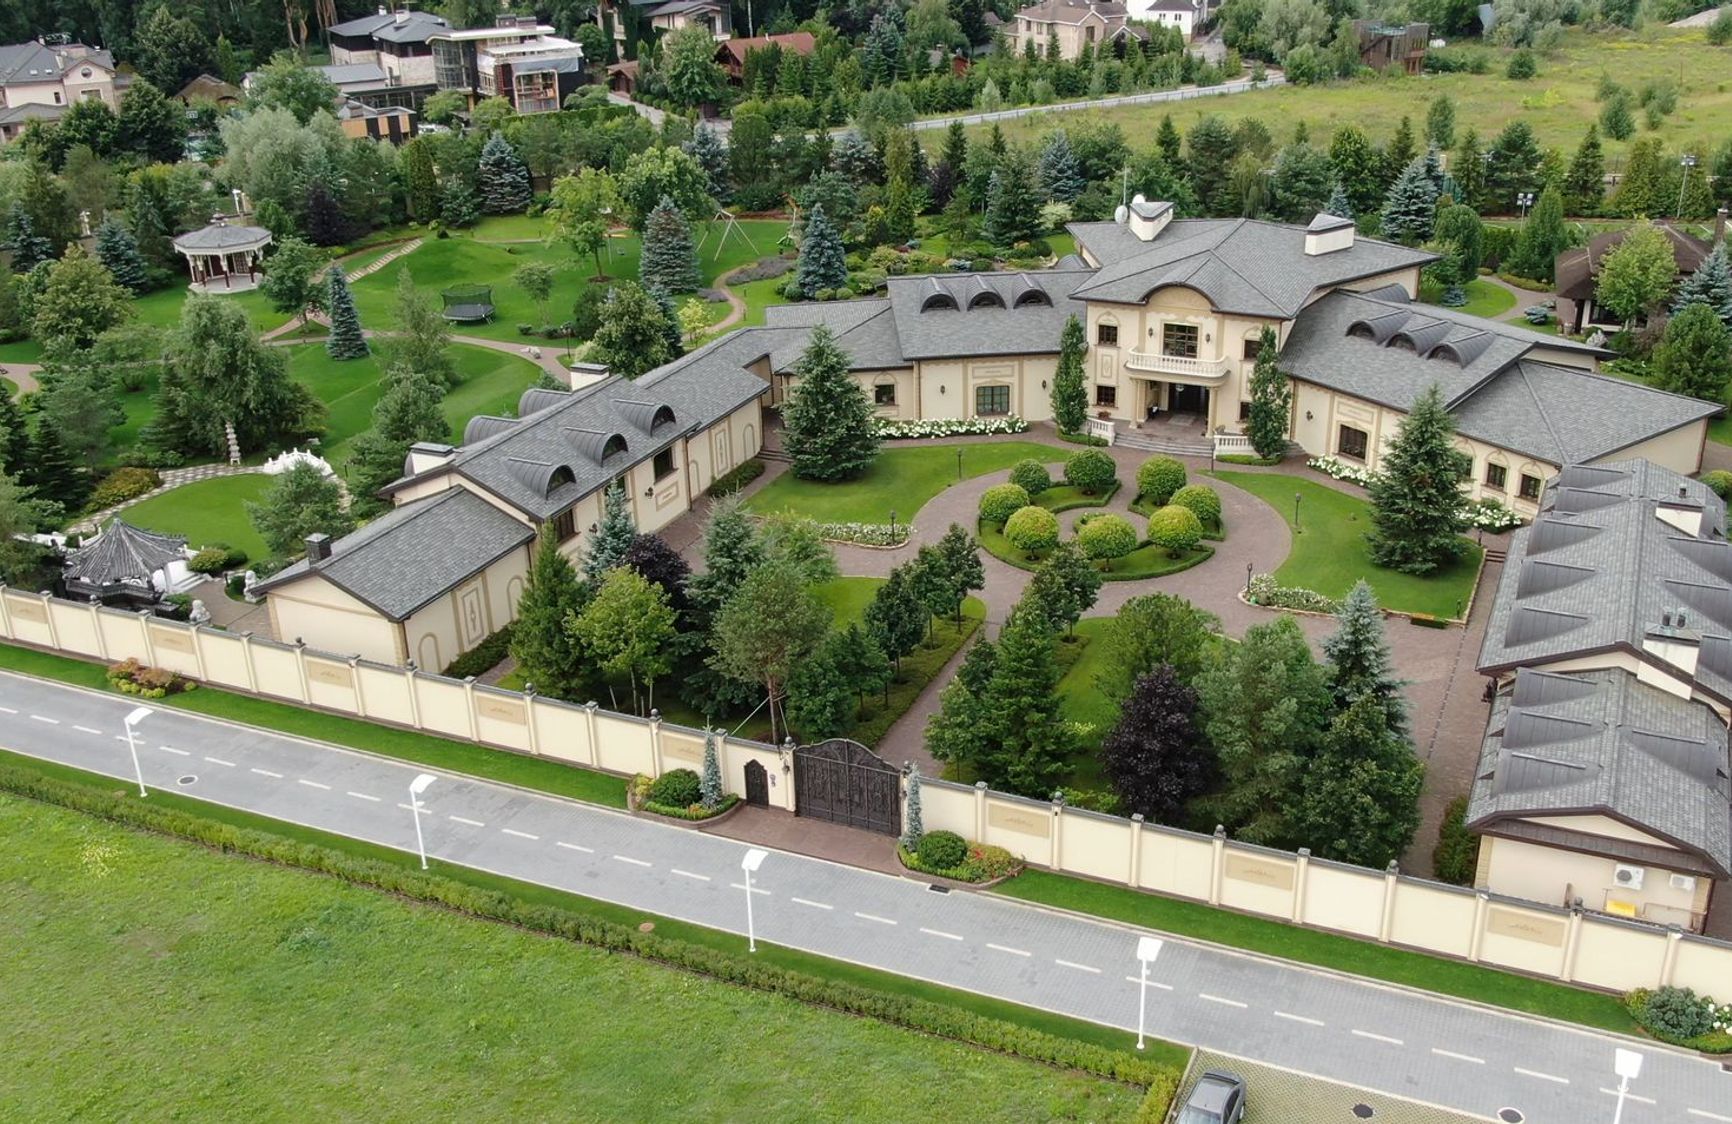 Shebunova's mansion 